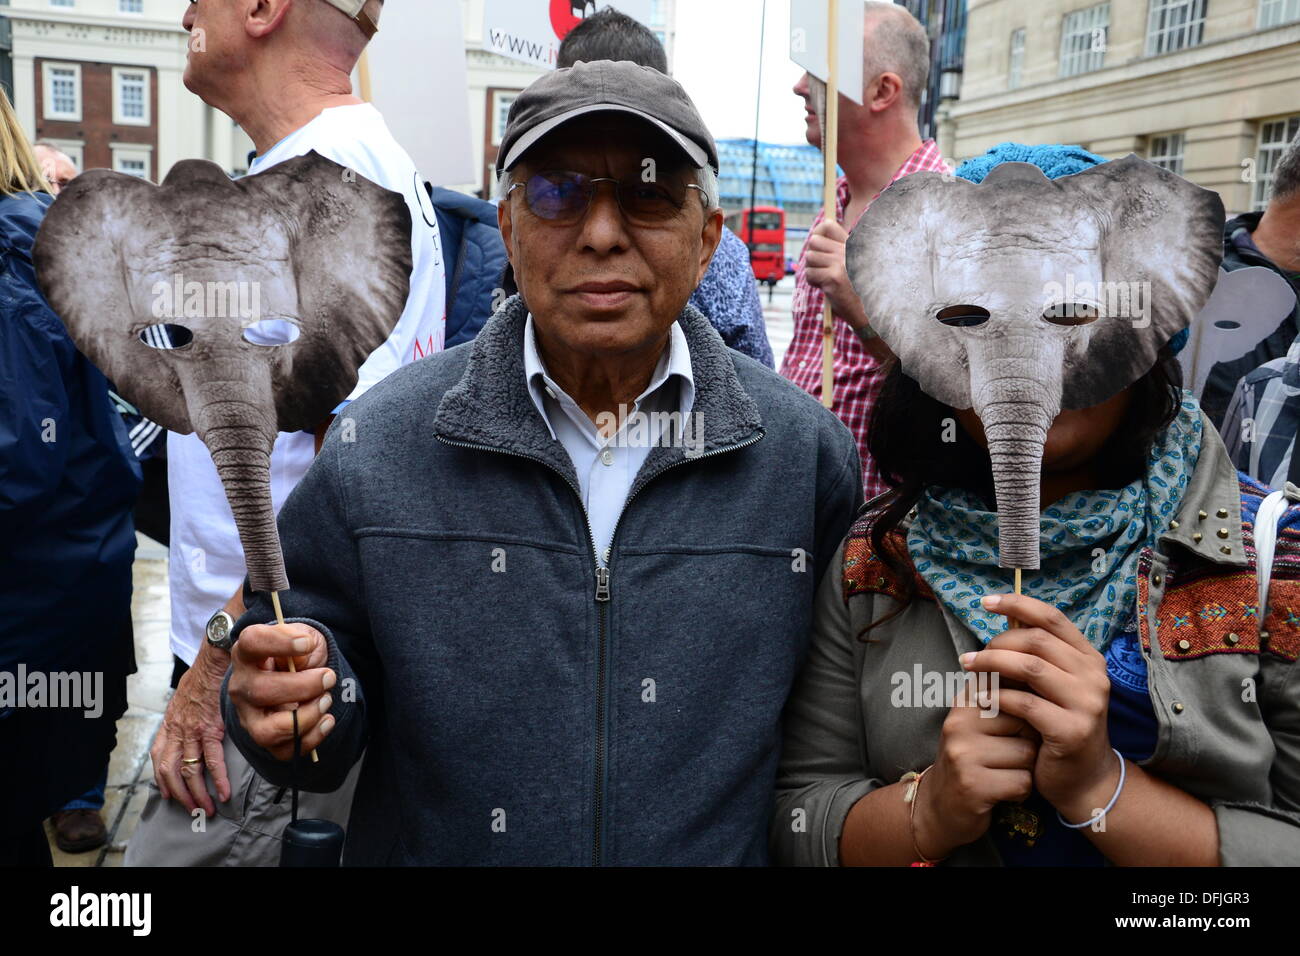 London UK, 4. Oktober 2013: Hunderte von Demonstranten marschieren, Parliament Square, Aufforderung an die Regierung, ein weltweites Verbot von Elfenbein zu unterstützen. Die Demonstranten angesprochen von einem Elefanten getötet alle 15 Minuten um den illegalen Handel mit Elfenbein zu versorgen. Siehe Li / Alamy, live-Nachrichten Stockfoto